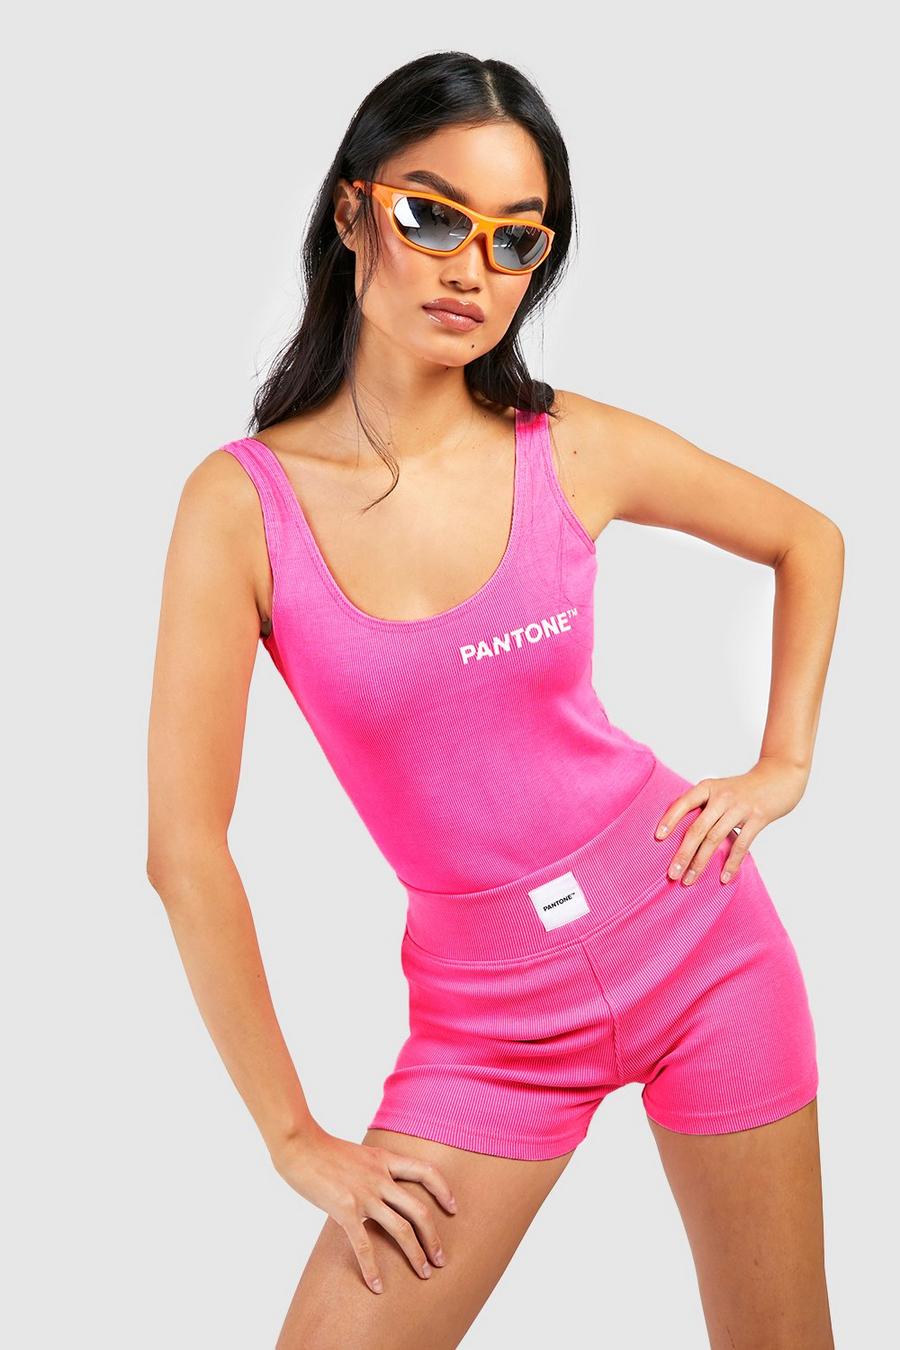 Neon-pink Pantone Ribbade booty shorts